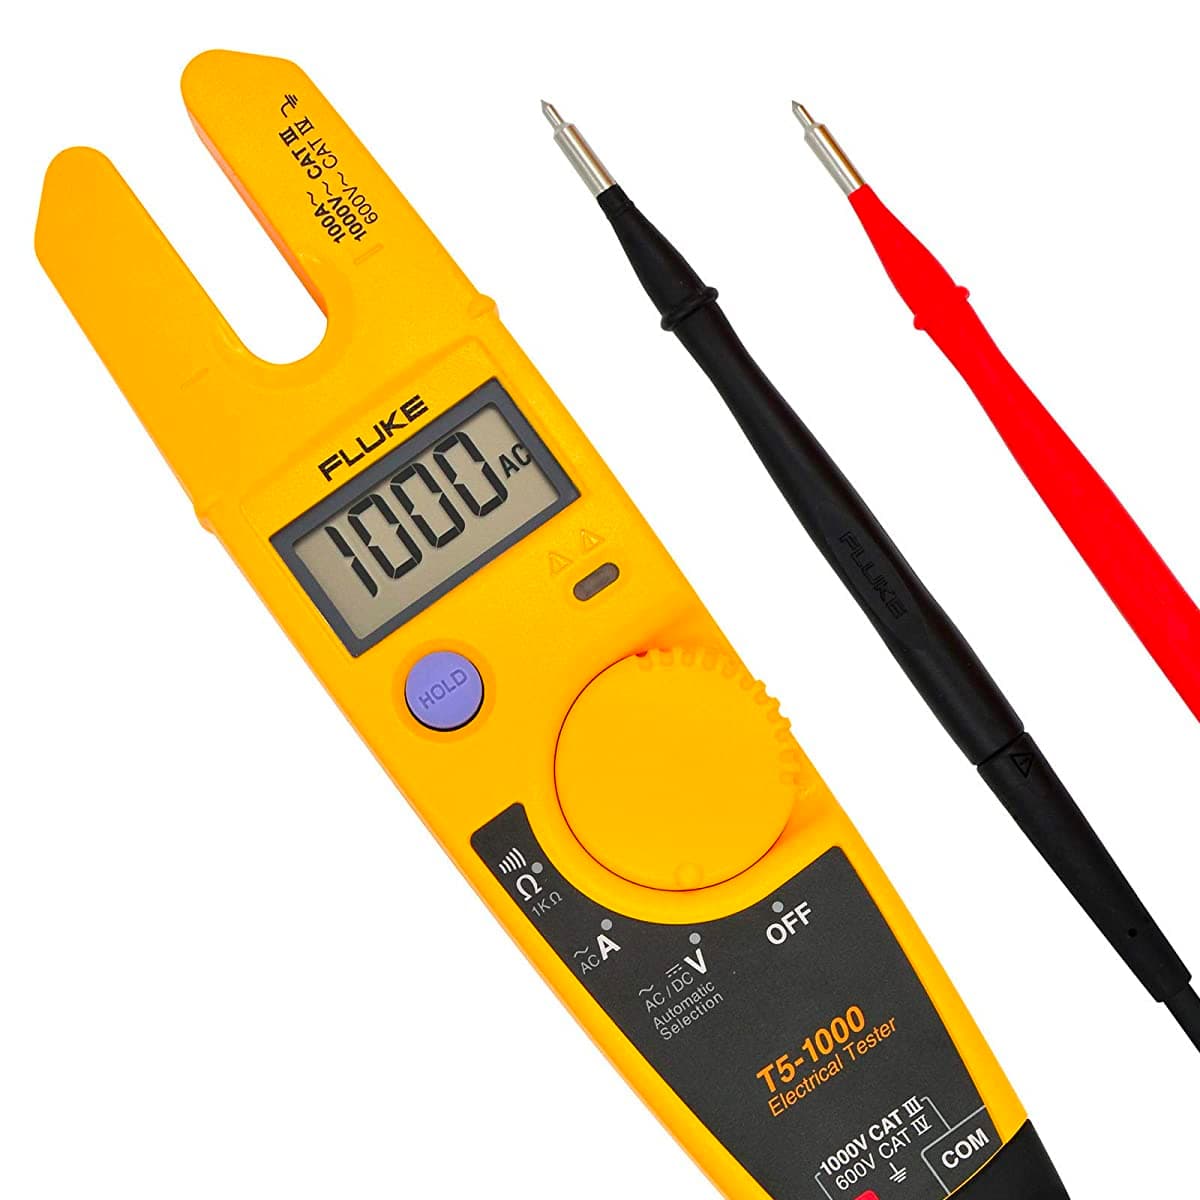 imagen principal de producto Comprobador eléctrico para medir tensión, resistencia y corriente AC T5-1000 USA